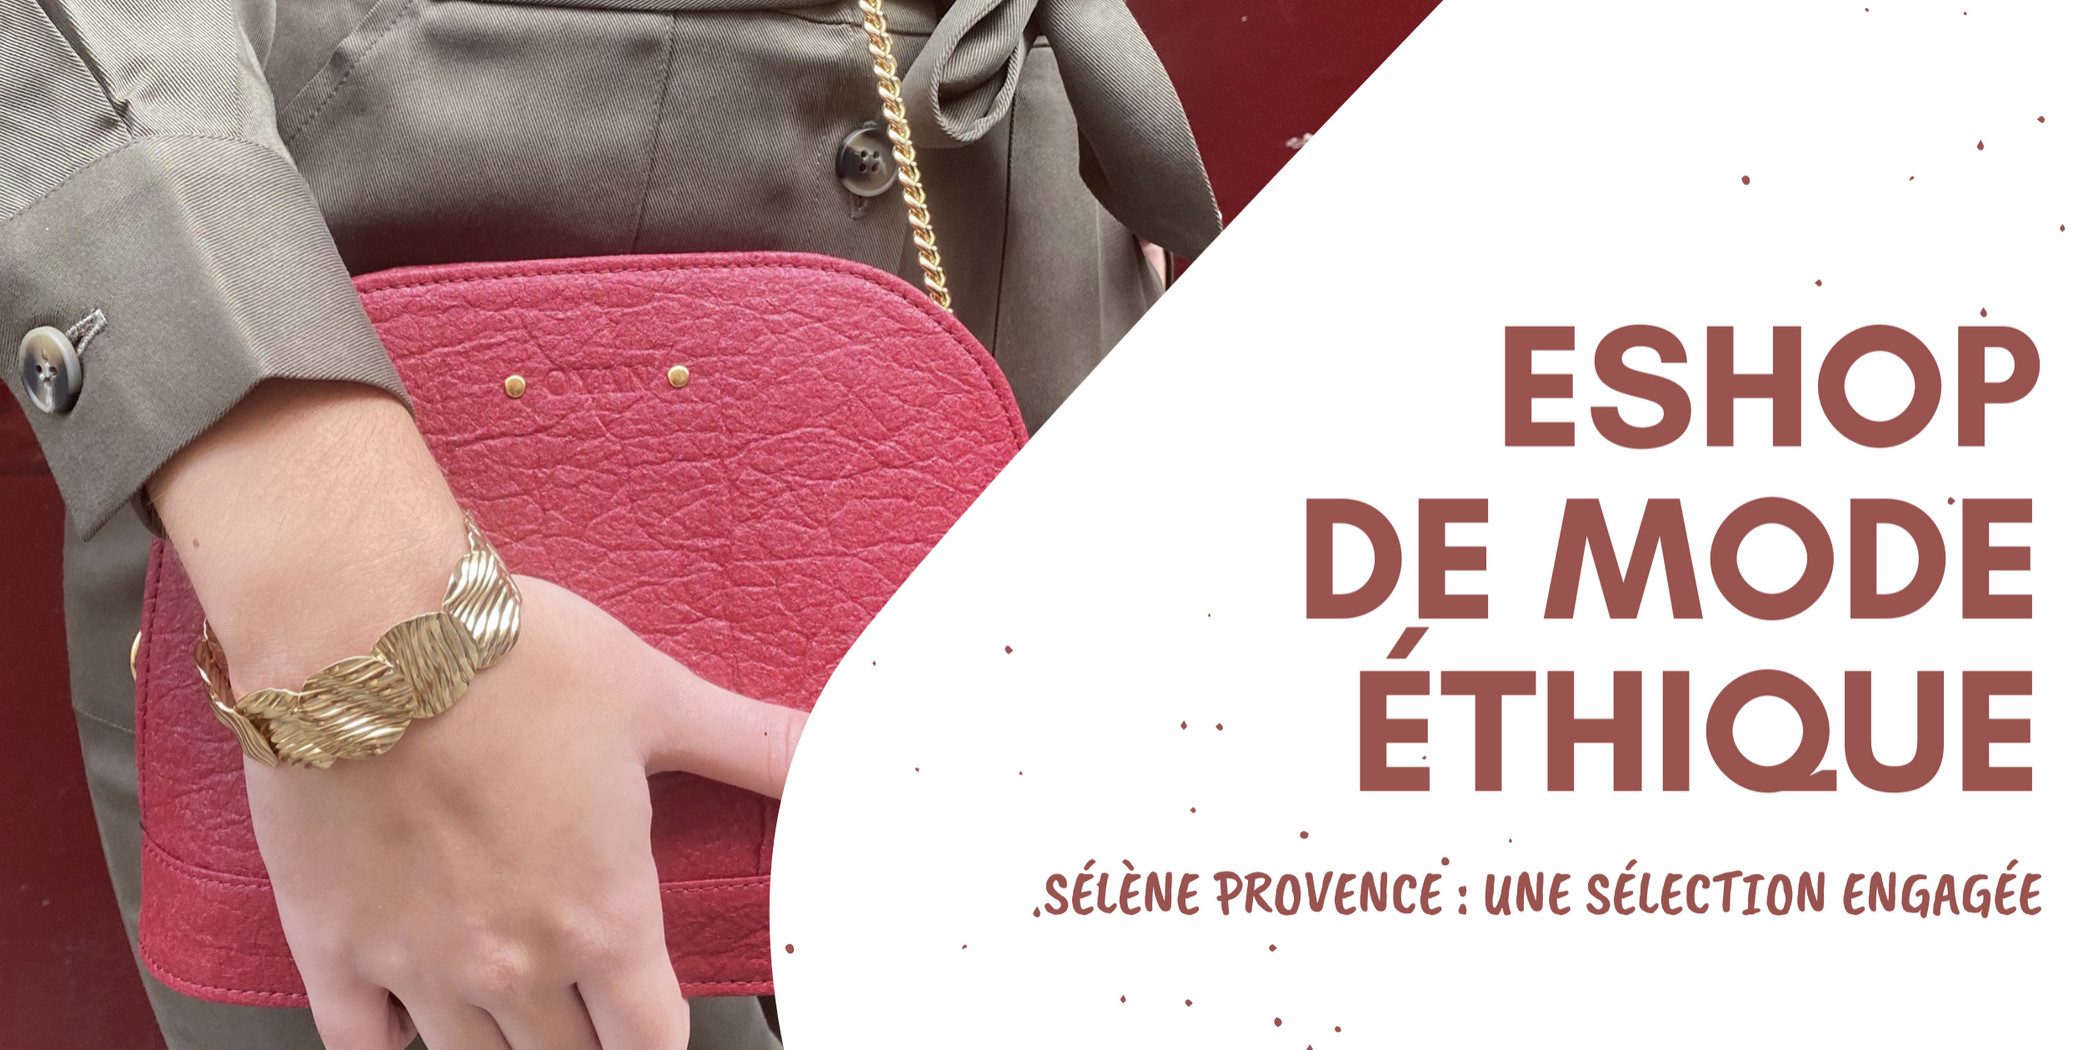 Sélène Provence, l'eshop de mode éthique et engagée